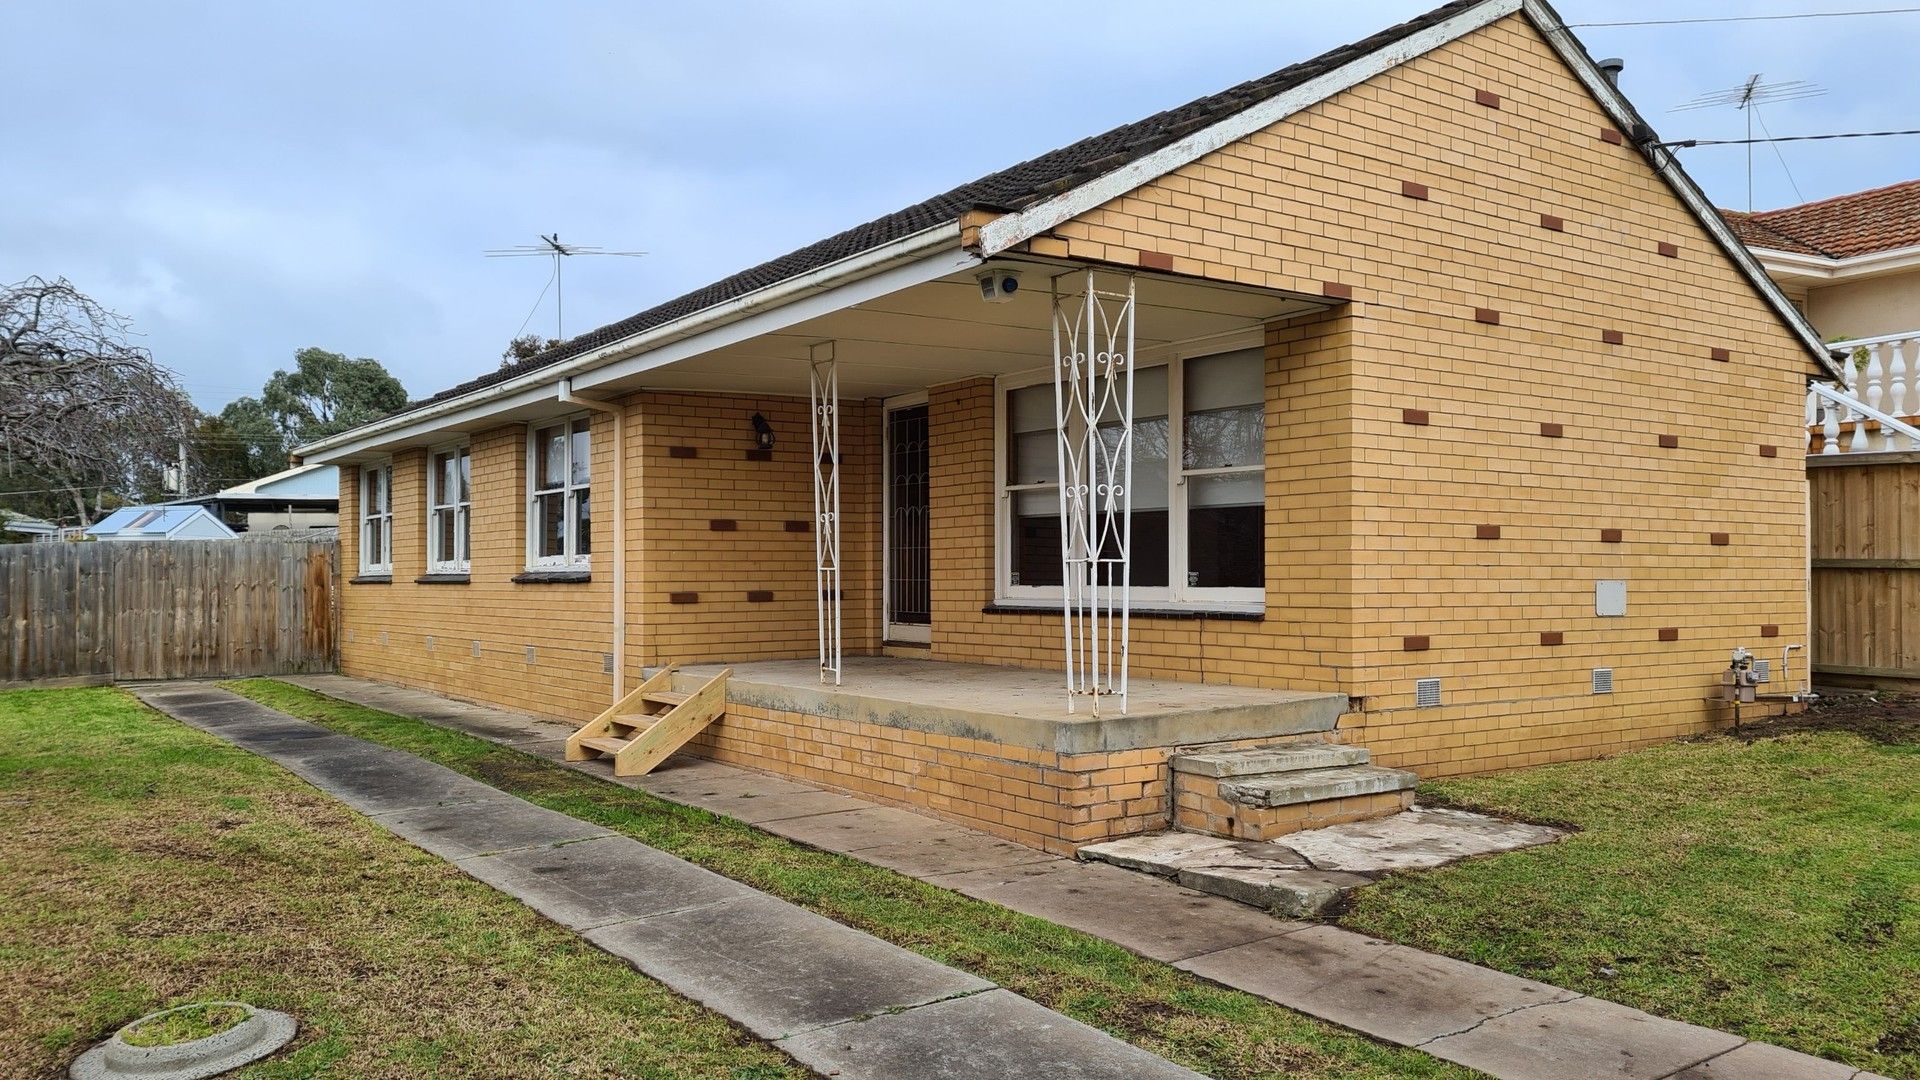 3 bedrooms House in 156 Ballarat Road HAMLYN HEIGHTS VIC, 3215